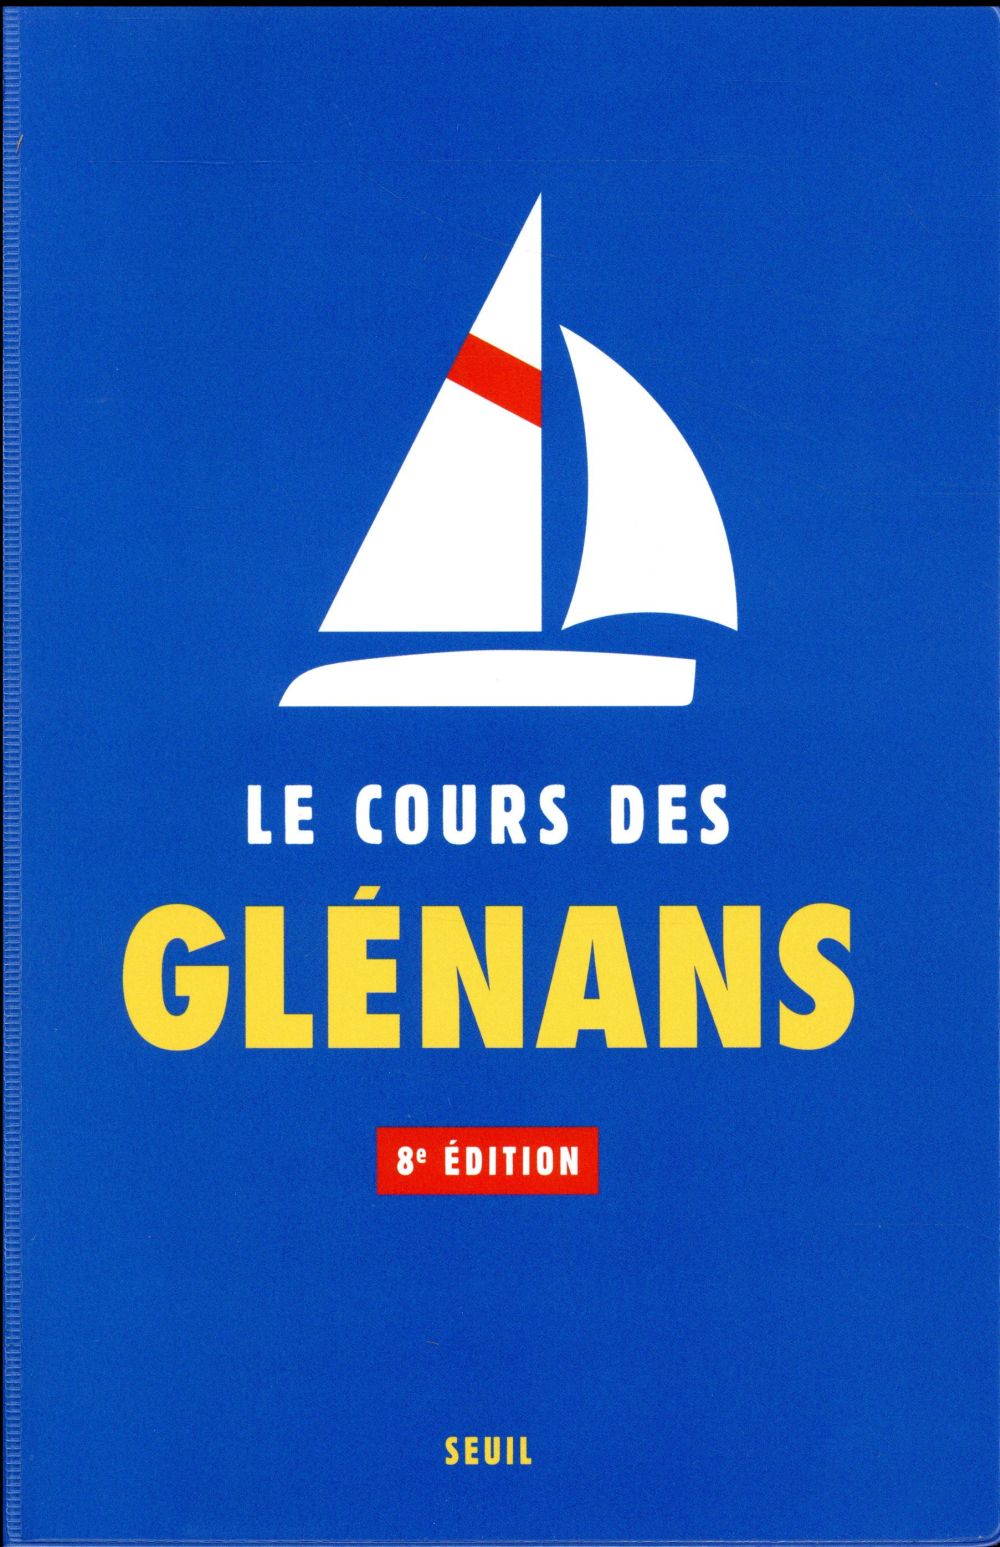 LE COURS DES GLENANS (8E EDITION)